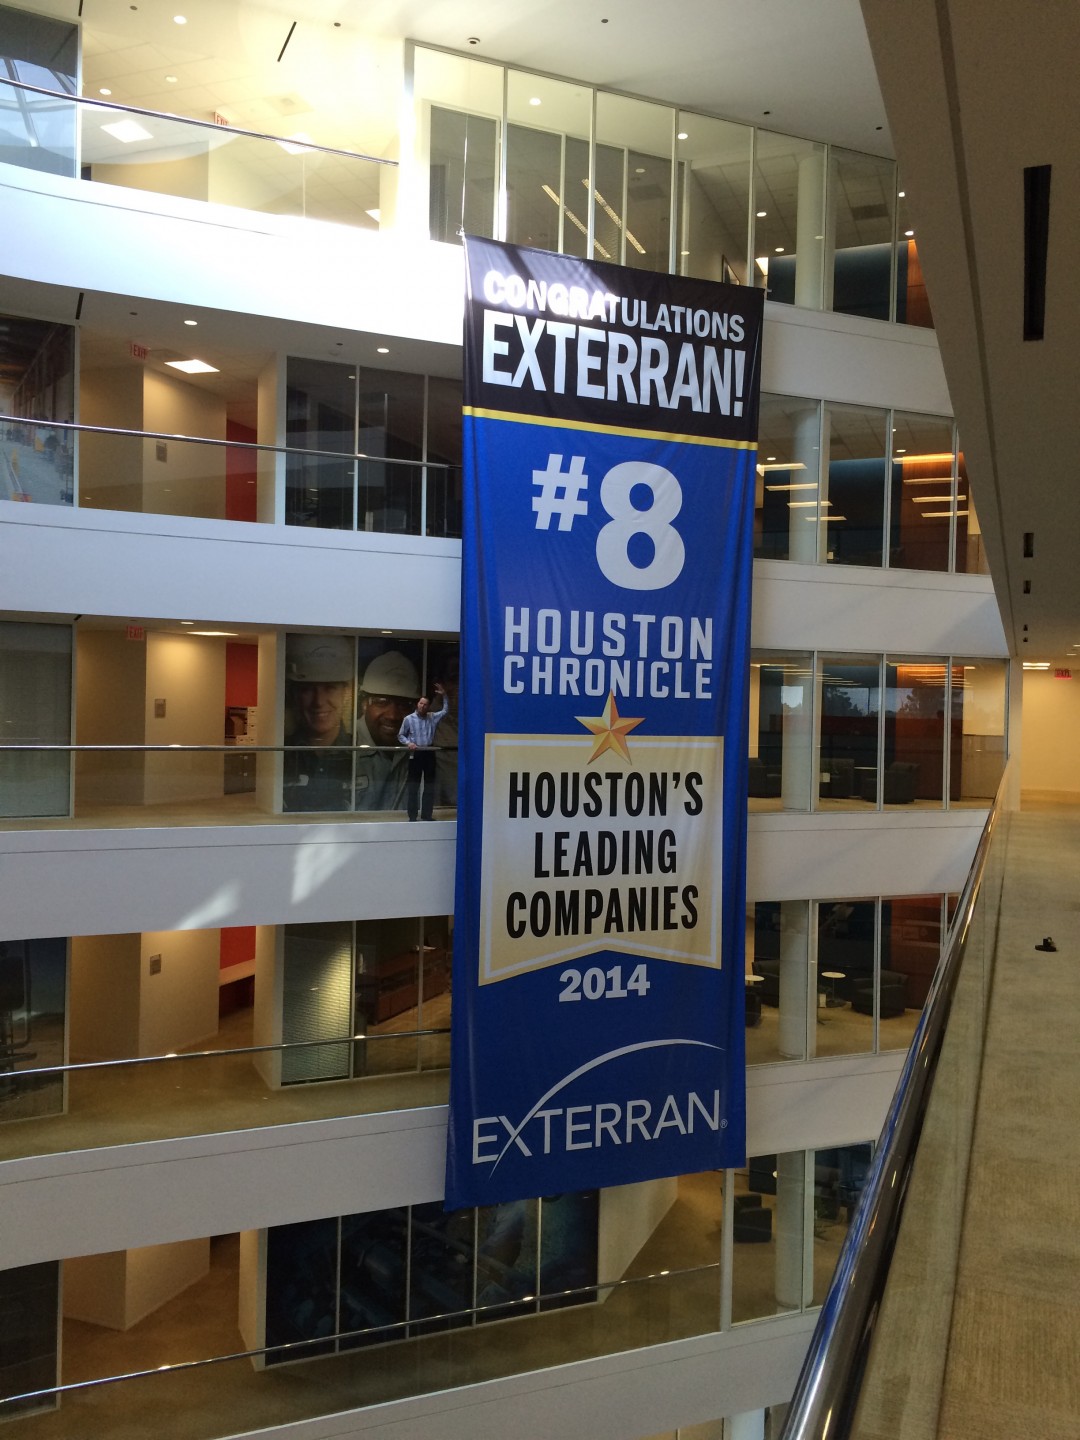 Giant Banner In Houston Tx For Exterran Holdings Ranked 8 In Houston